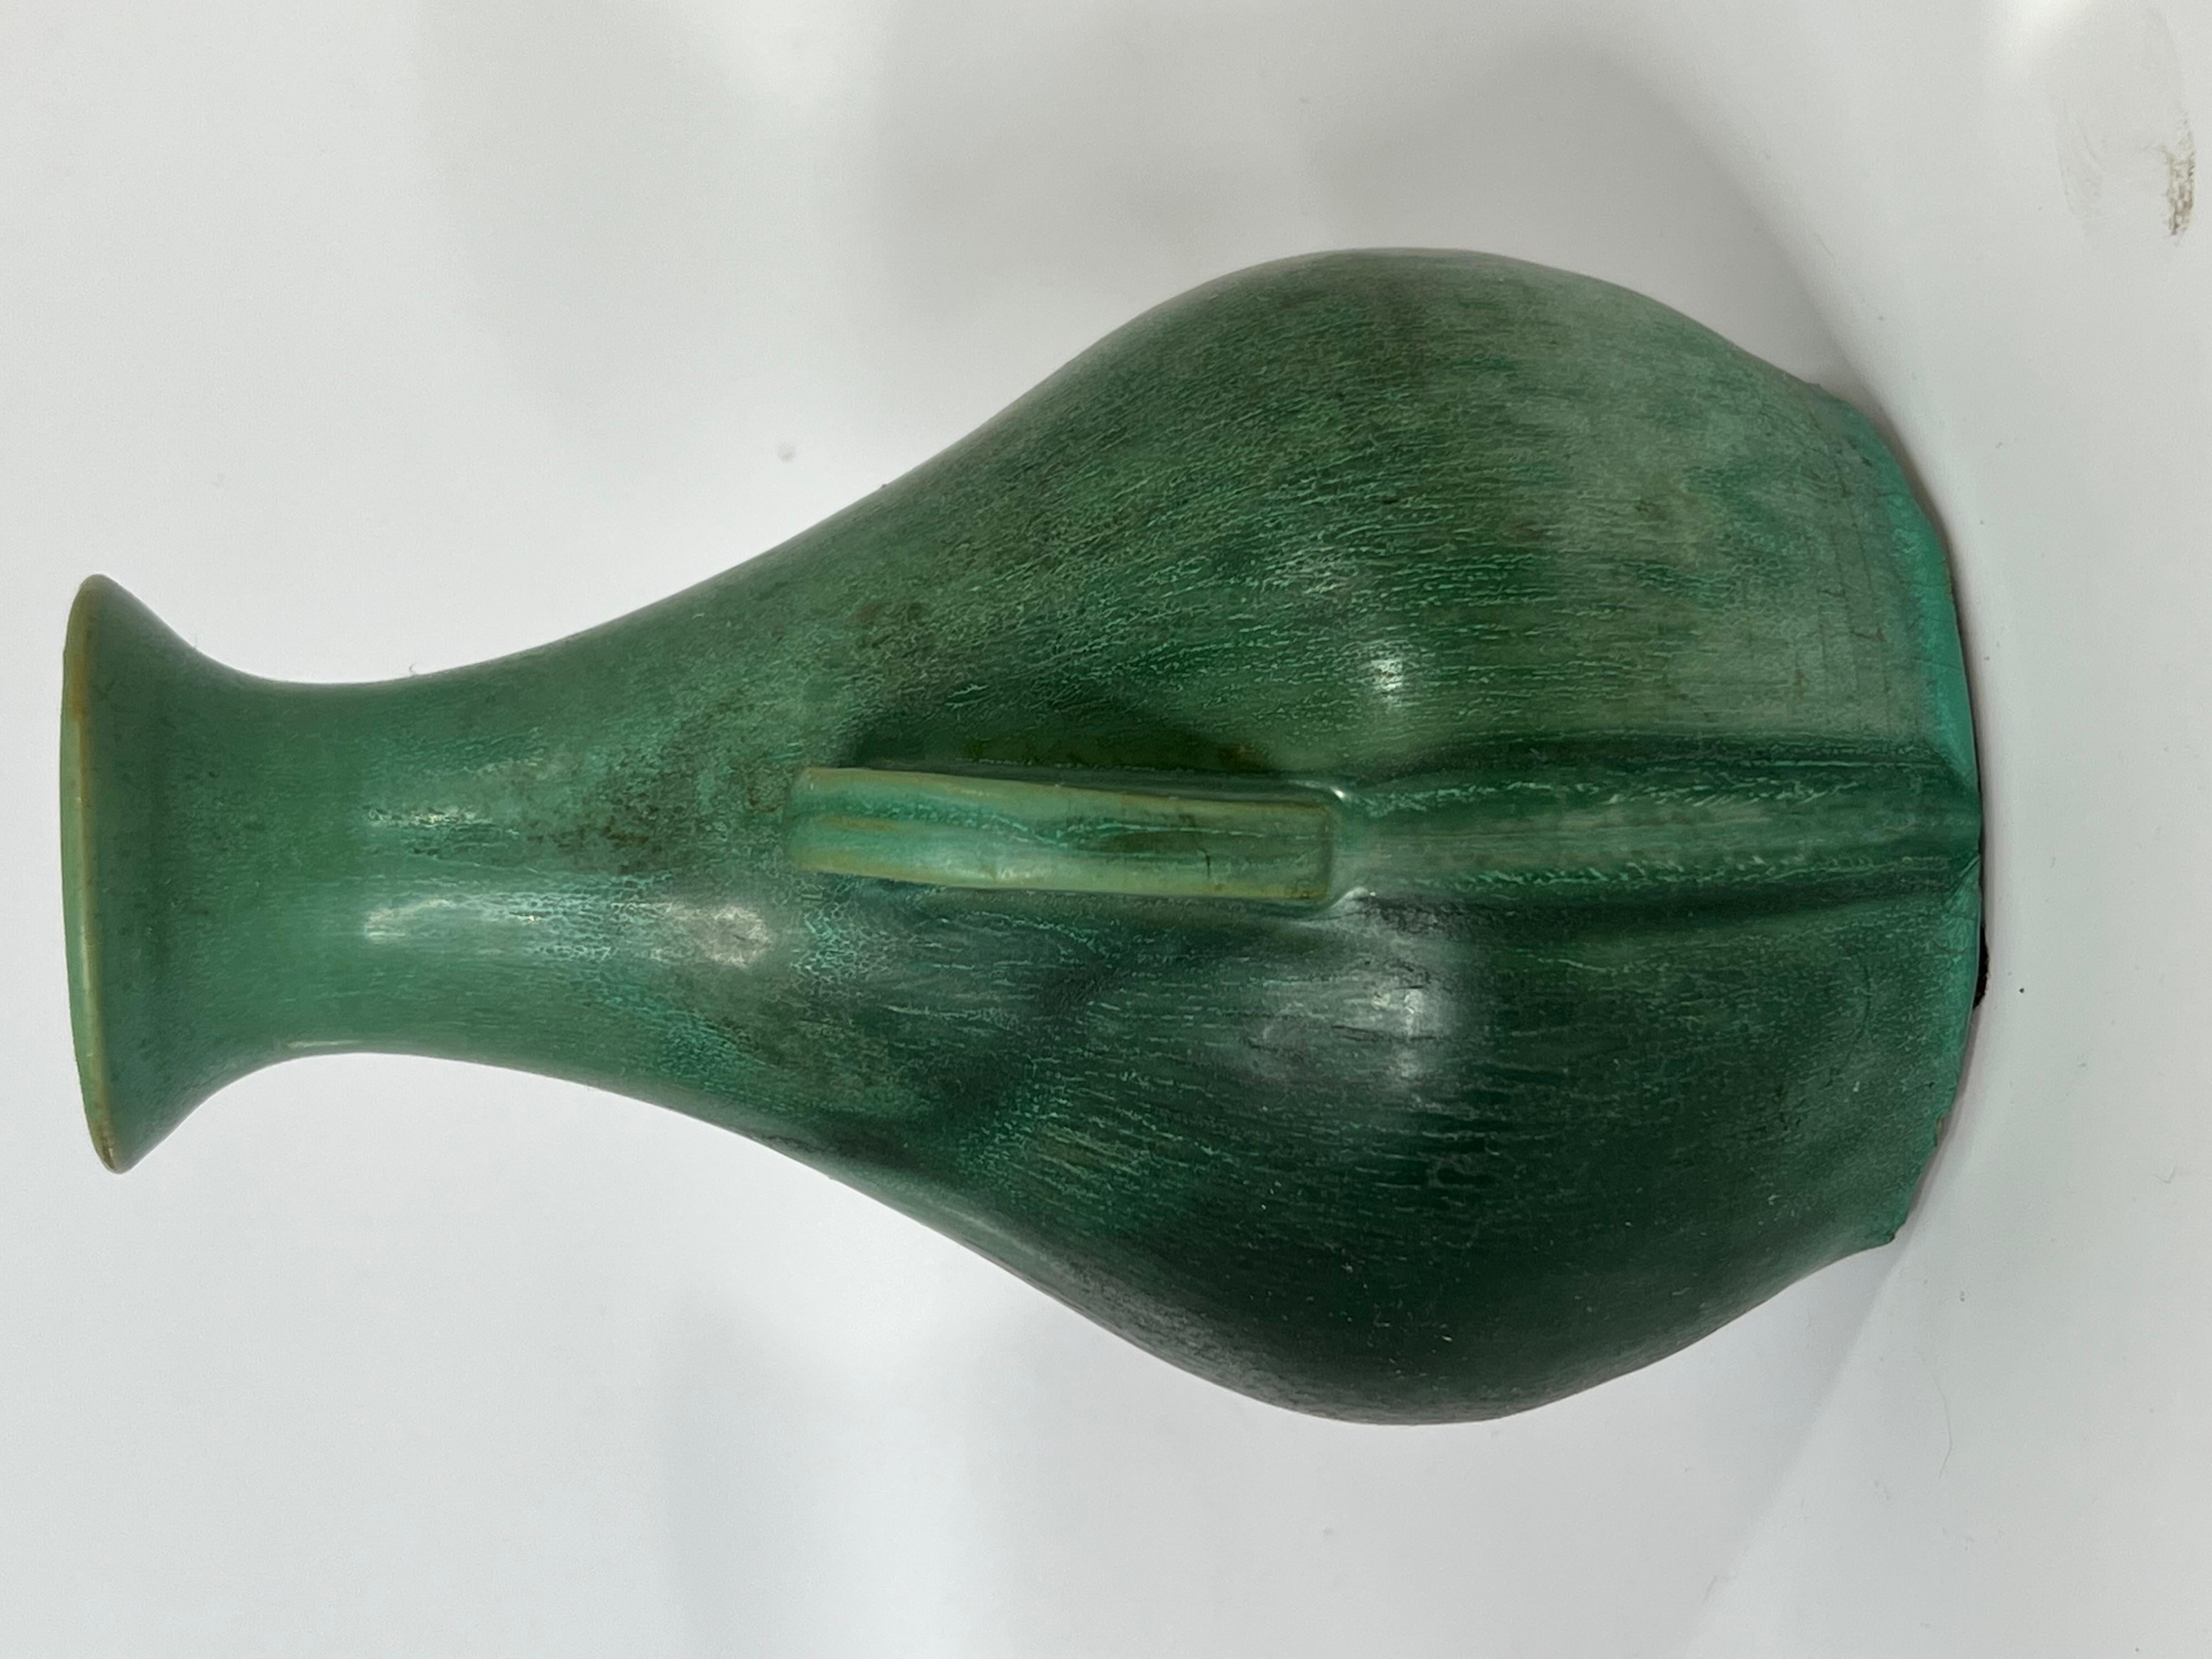 Américain Un véritable vase Bybee (tm) à poignée vert cristalline mat.